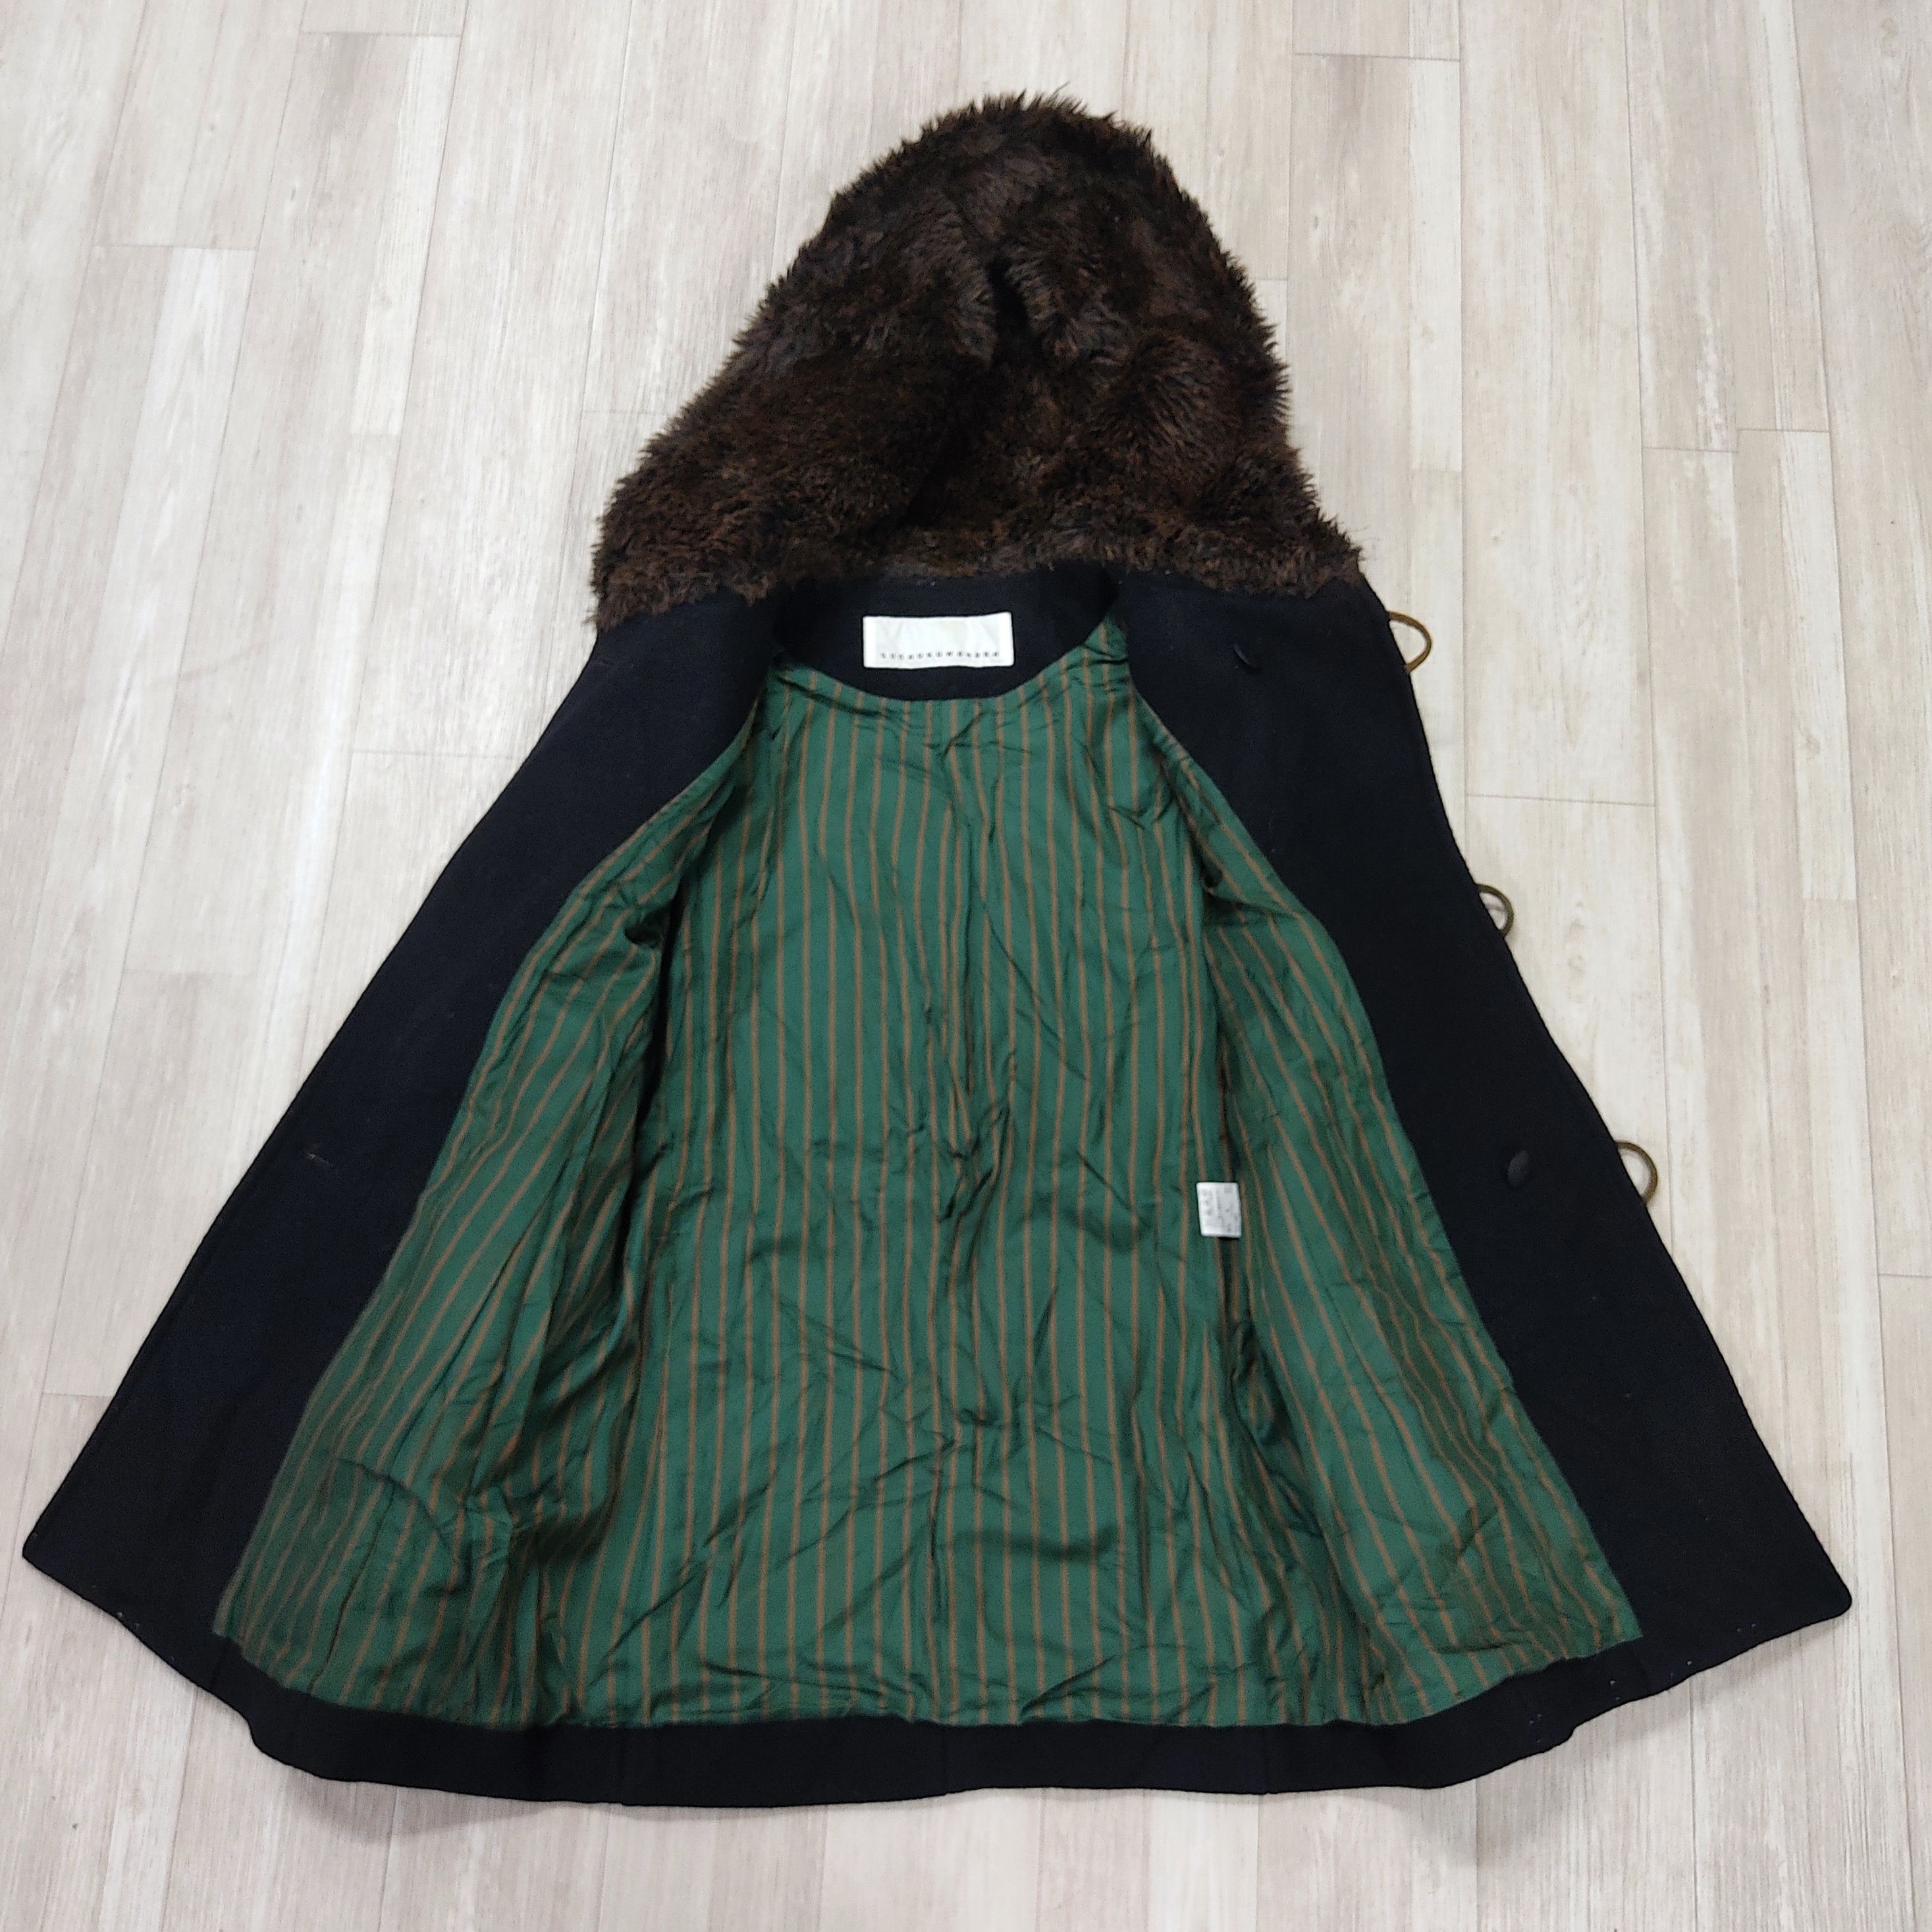 SUNAO KUWAHARA Fur Hooded Wool Duffle Jacket - 9